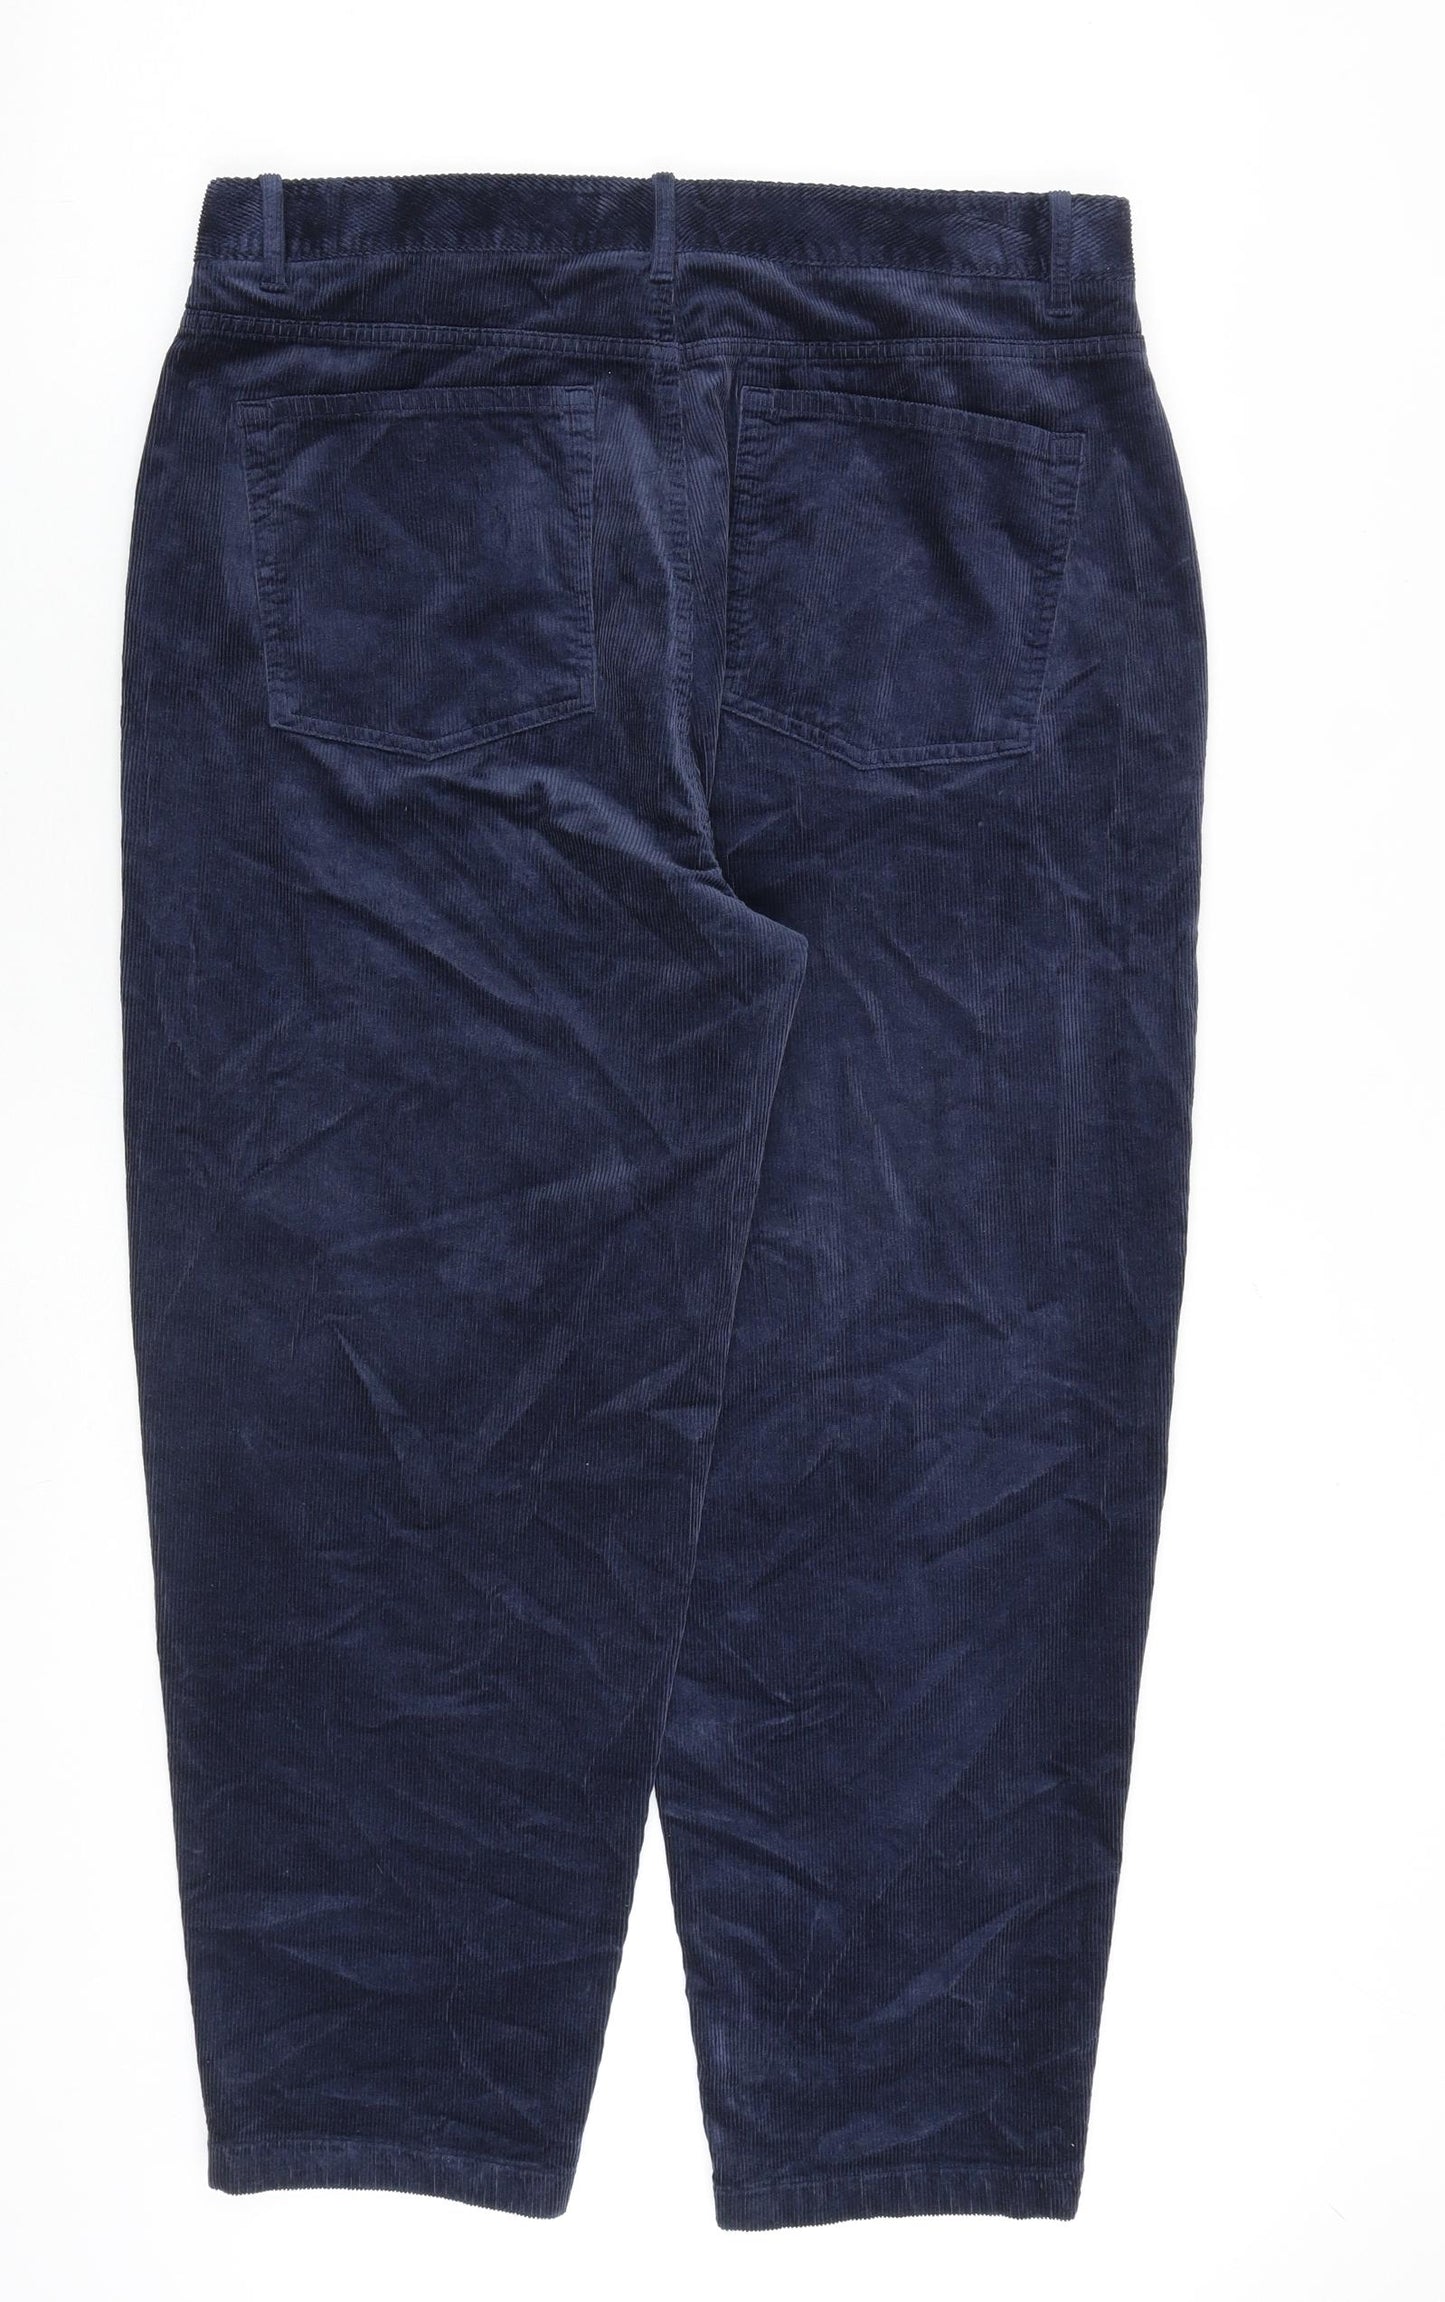 Per Una Womens Blue Cotton Trousers Size 16 L27 in Regular Zip